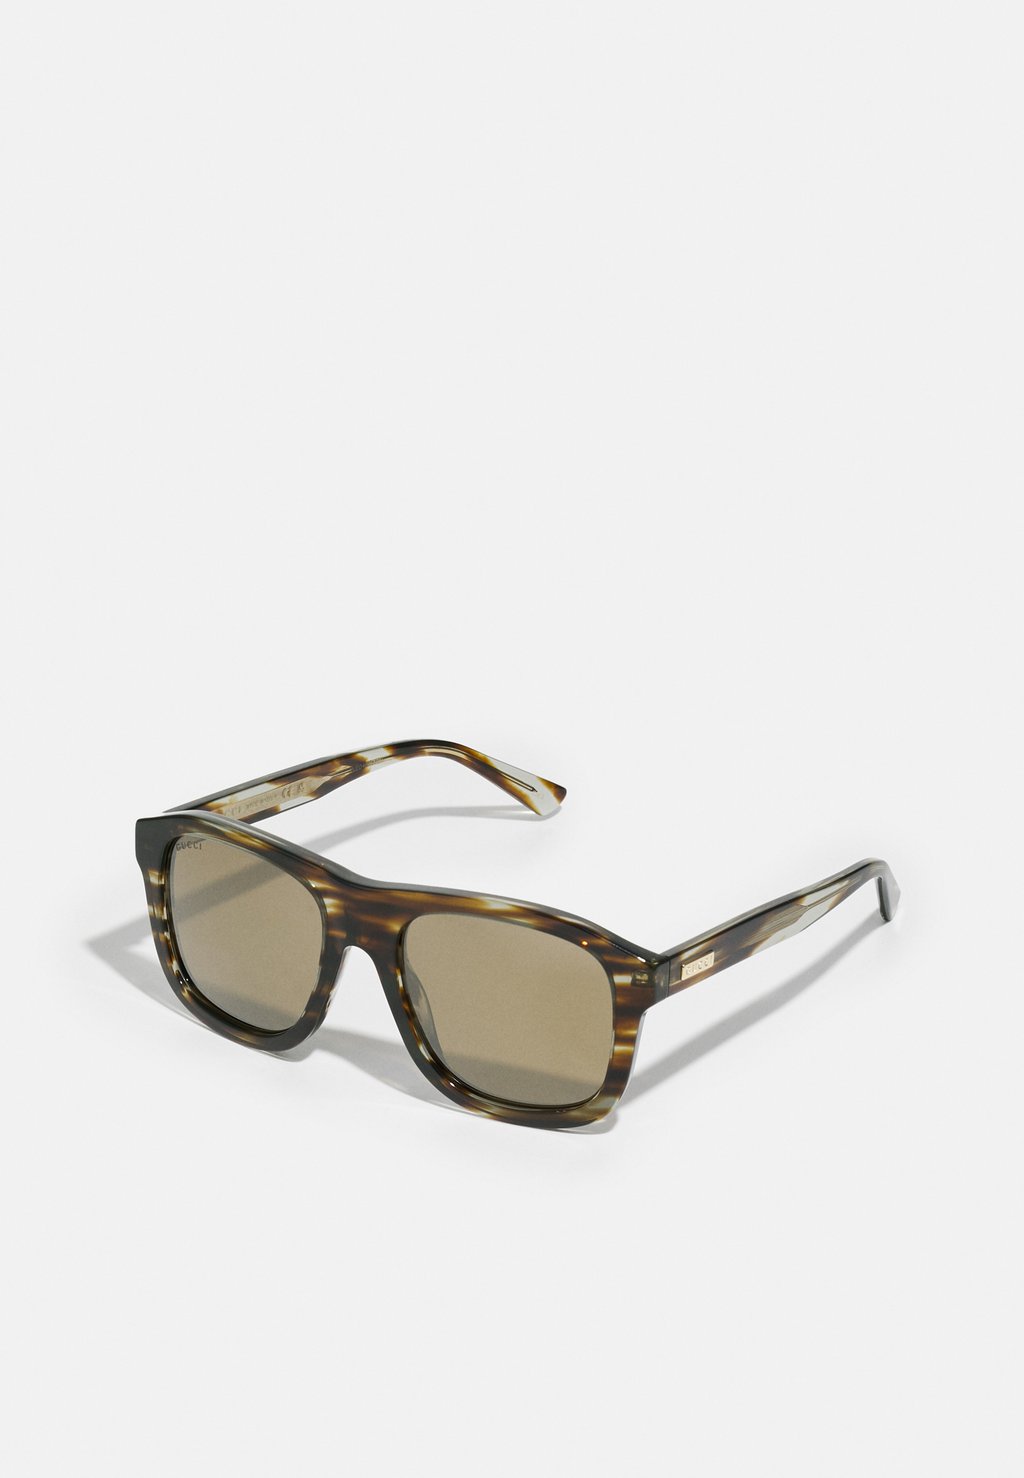 Солнцезащитные очки Unisex Gucci, цвет havana/bronze-coloured солнцезащитные очки unisex gucci цвет black silver coloured